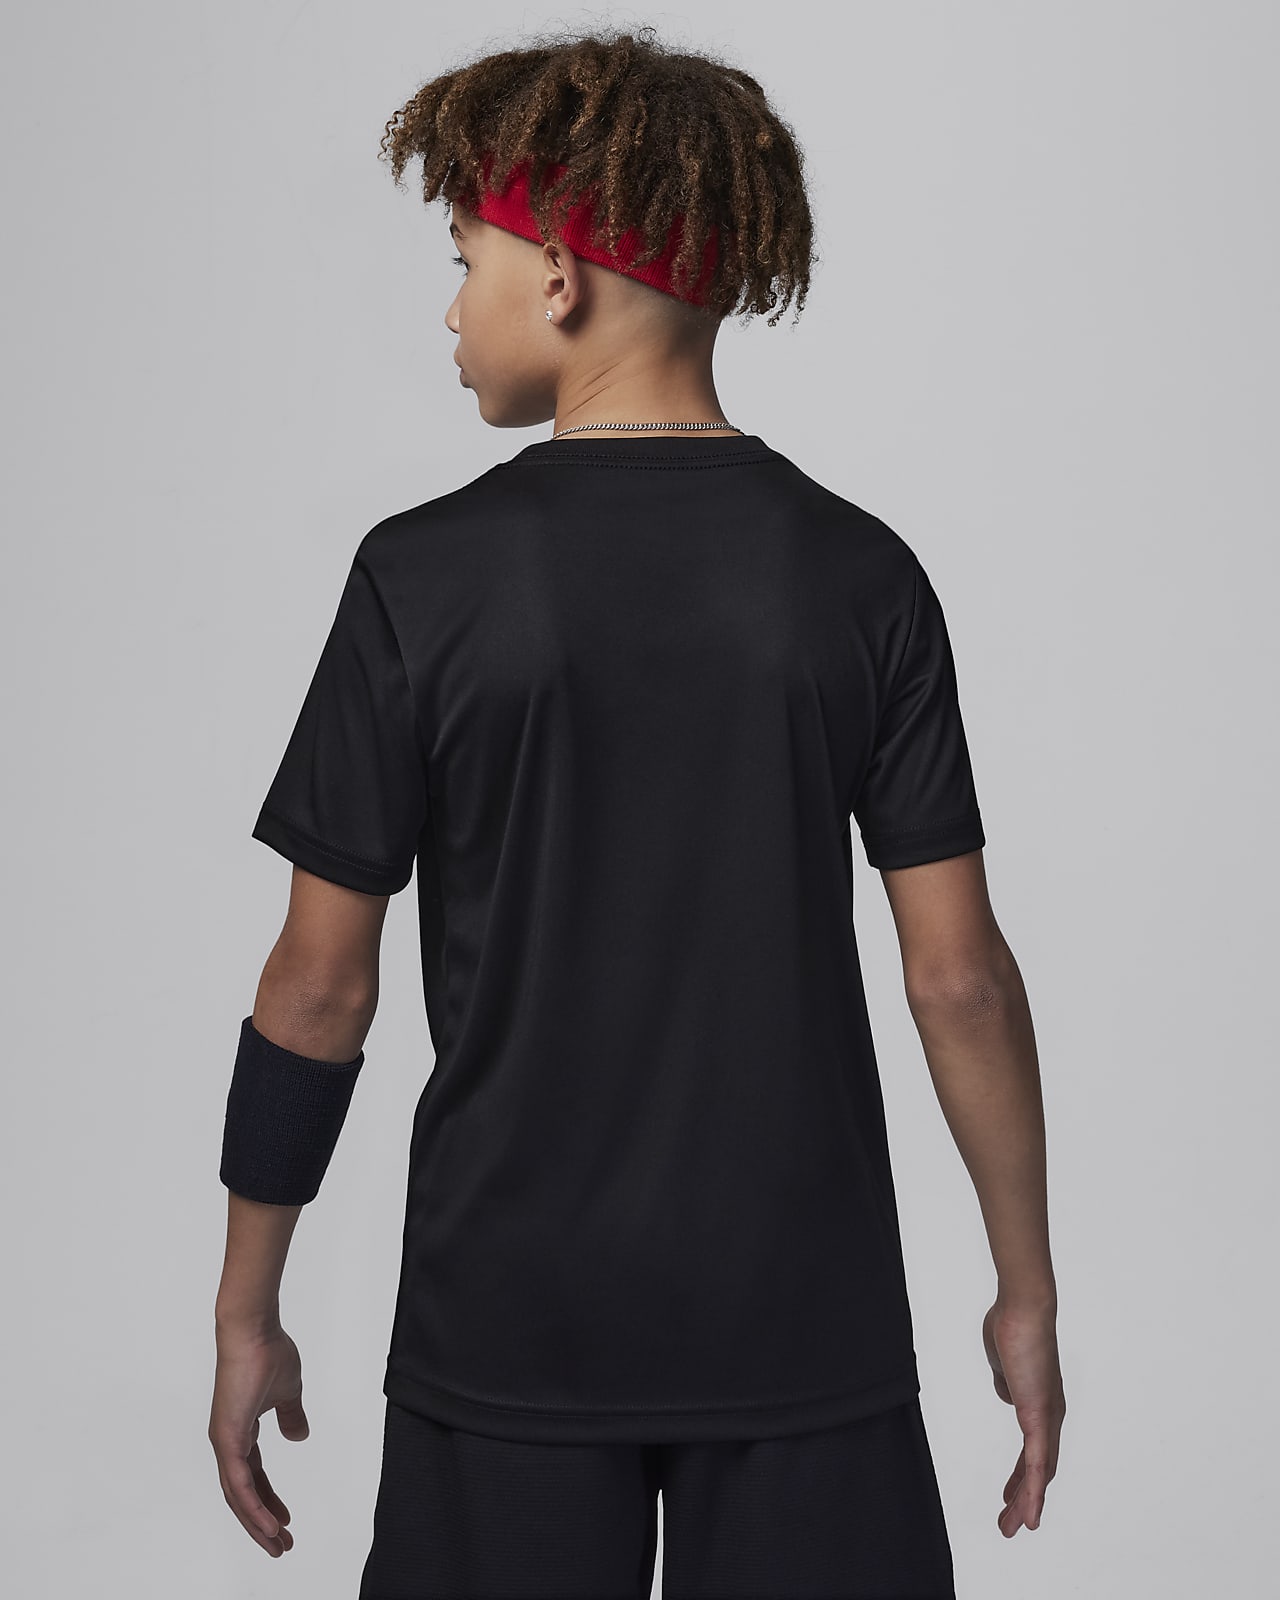 Nike Air Jordan Mens Dri-Fit Shirt Sleeveless Jumpman Size Xs